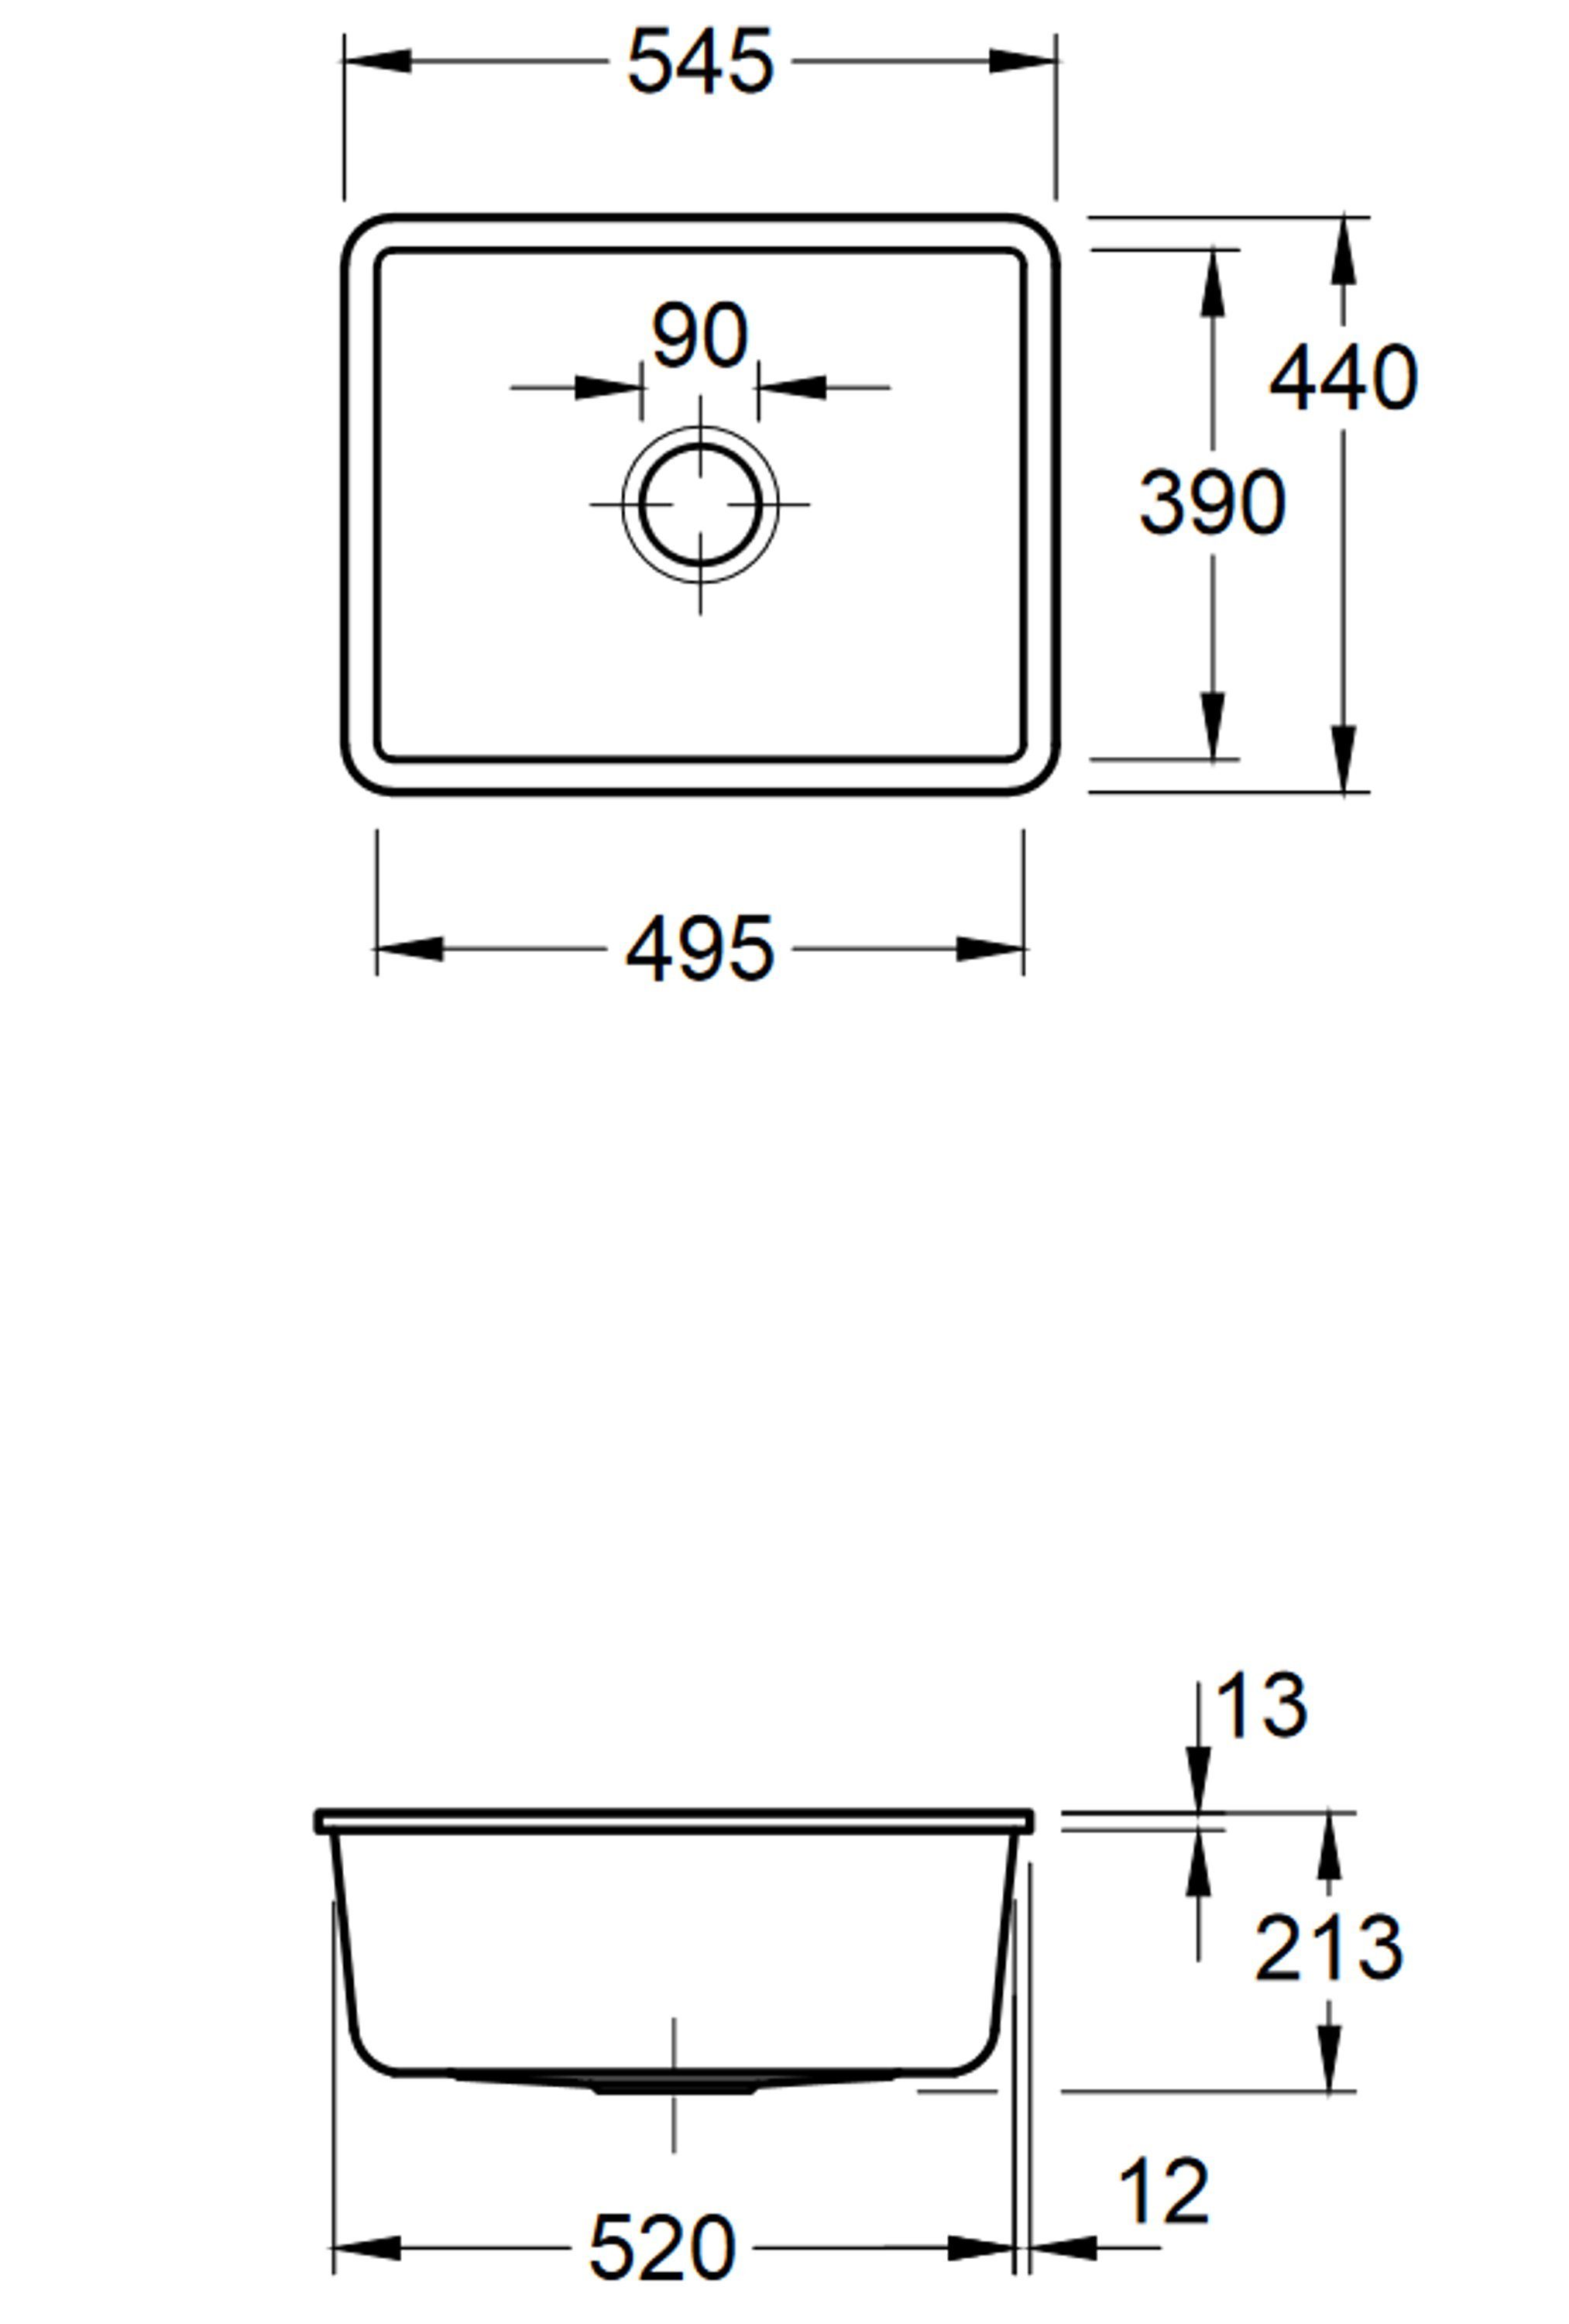 Villeroy & Boch Küchenspüle 3310 Geschmacksmuster geschützt cm, KD, 01 54.5/21.3 Rechteckig, Unterbauspülung